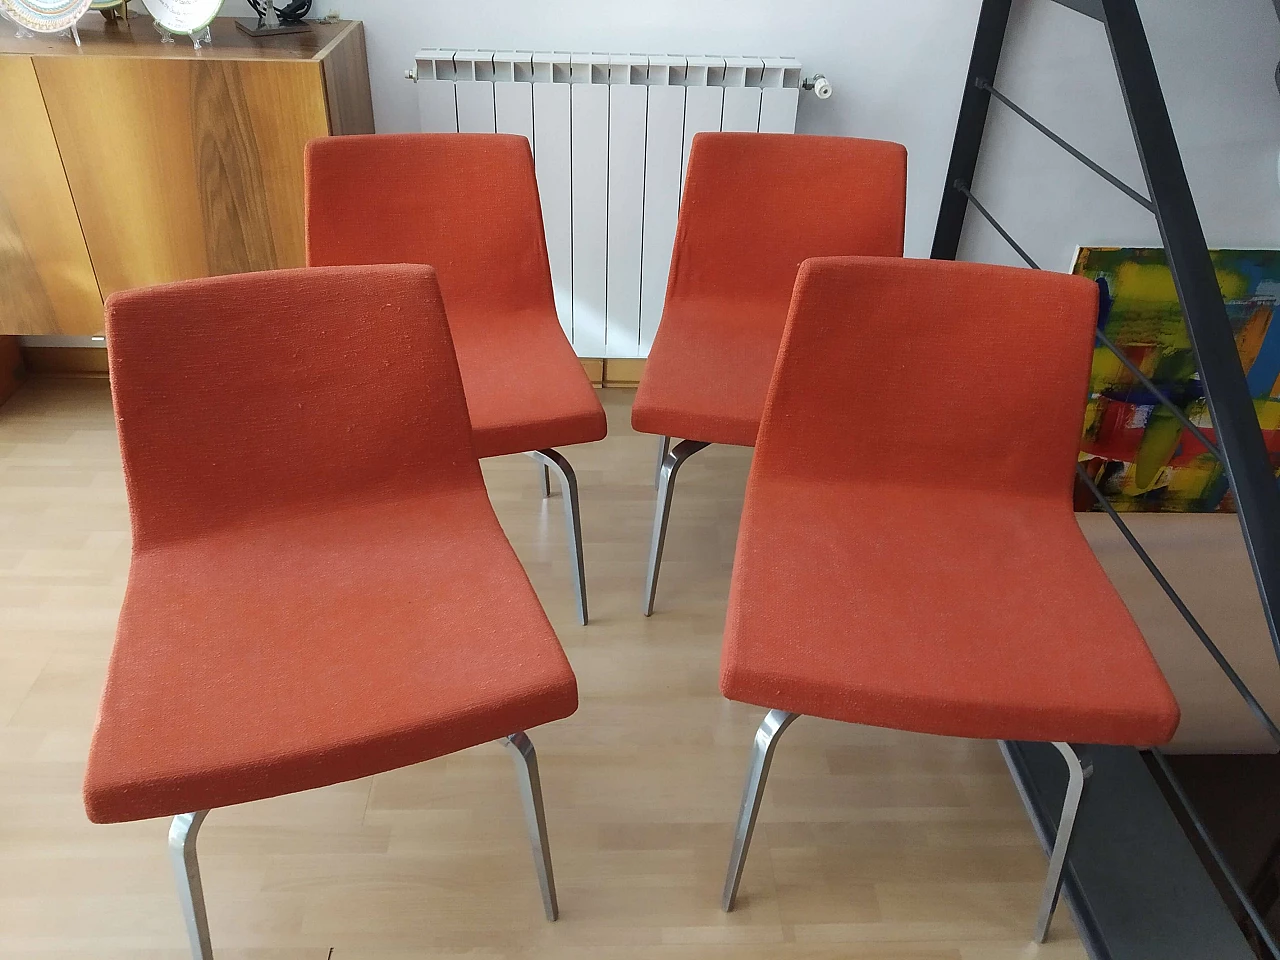 4 Hella Chairs by Mauro Lipparini for MisuraEmme 1477132